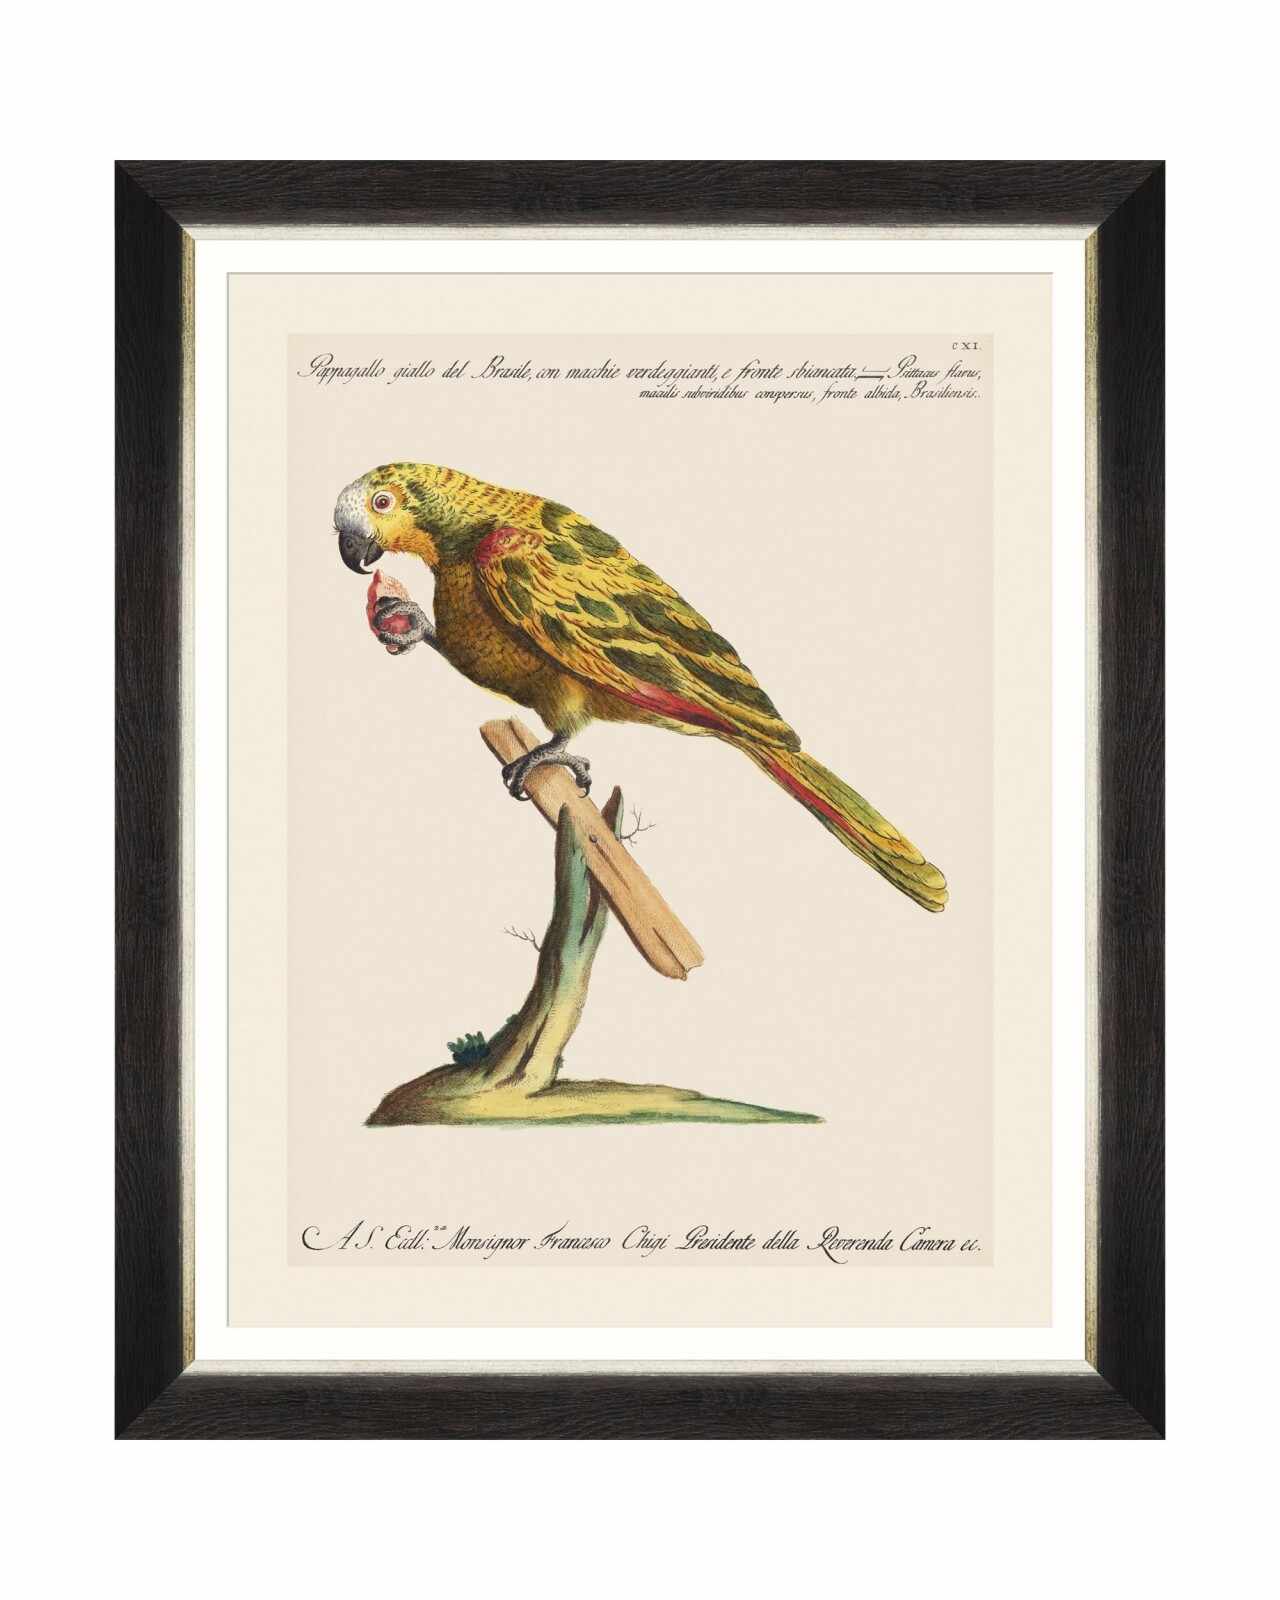 Tablou Framed Art Parrots Of Brasil IV, 40 x 50 cm